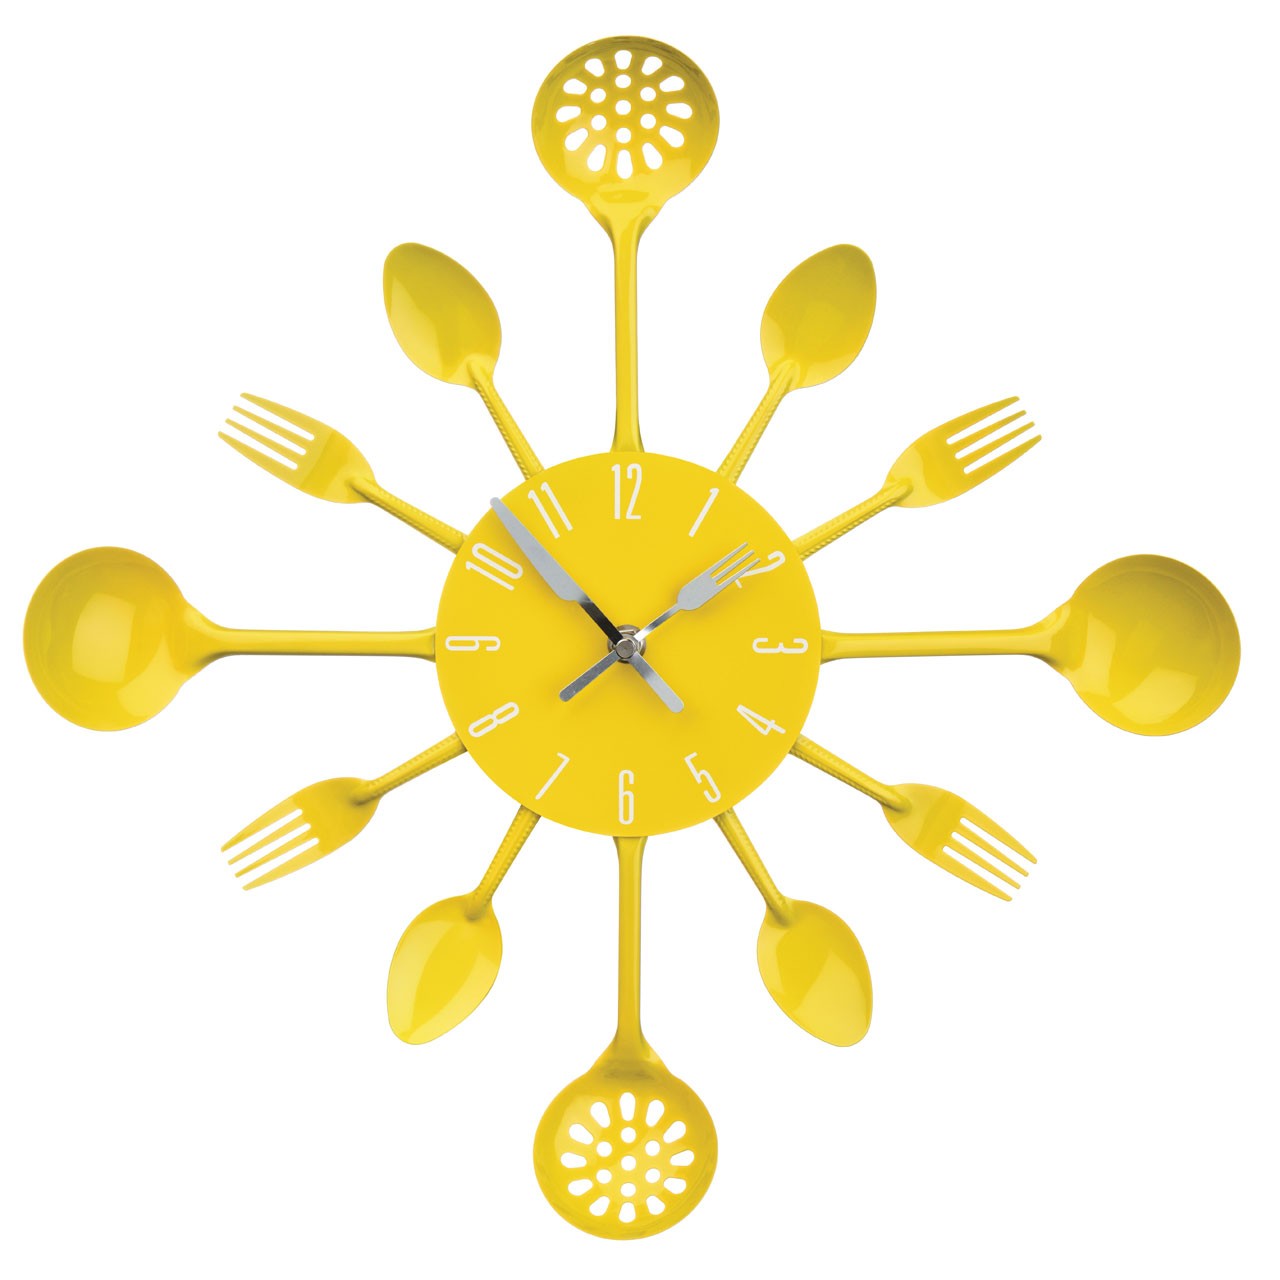 Prime Furnishing Cutlery Wall Clock - Yellow